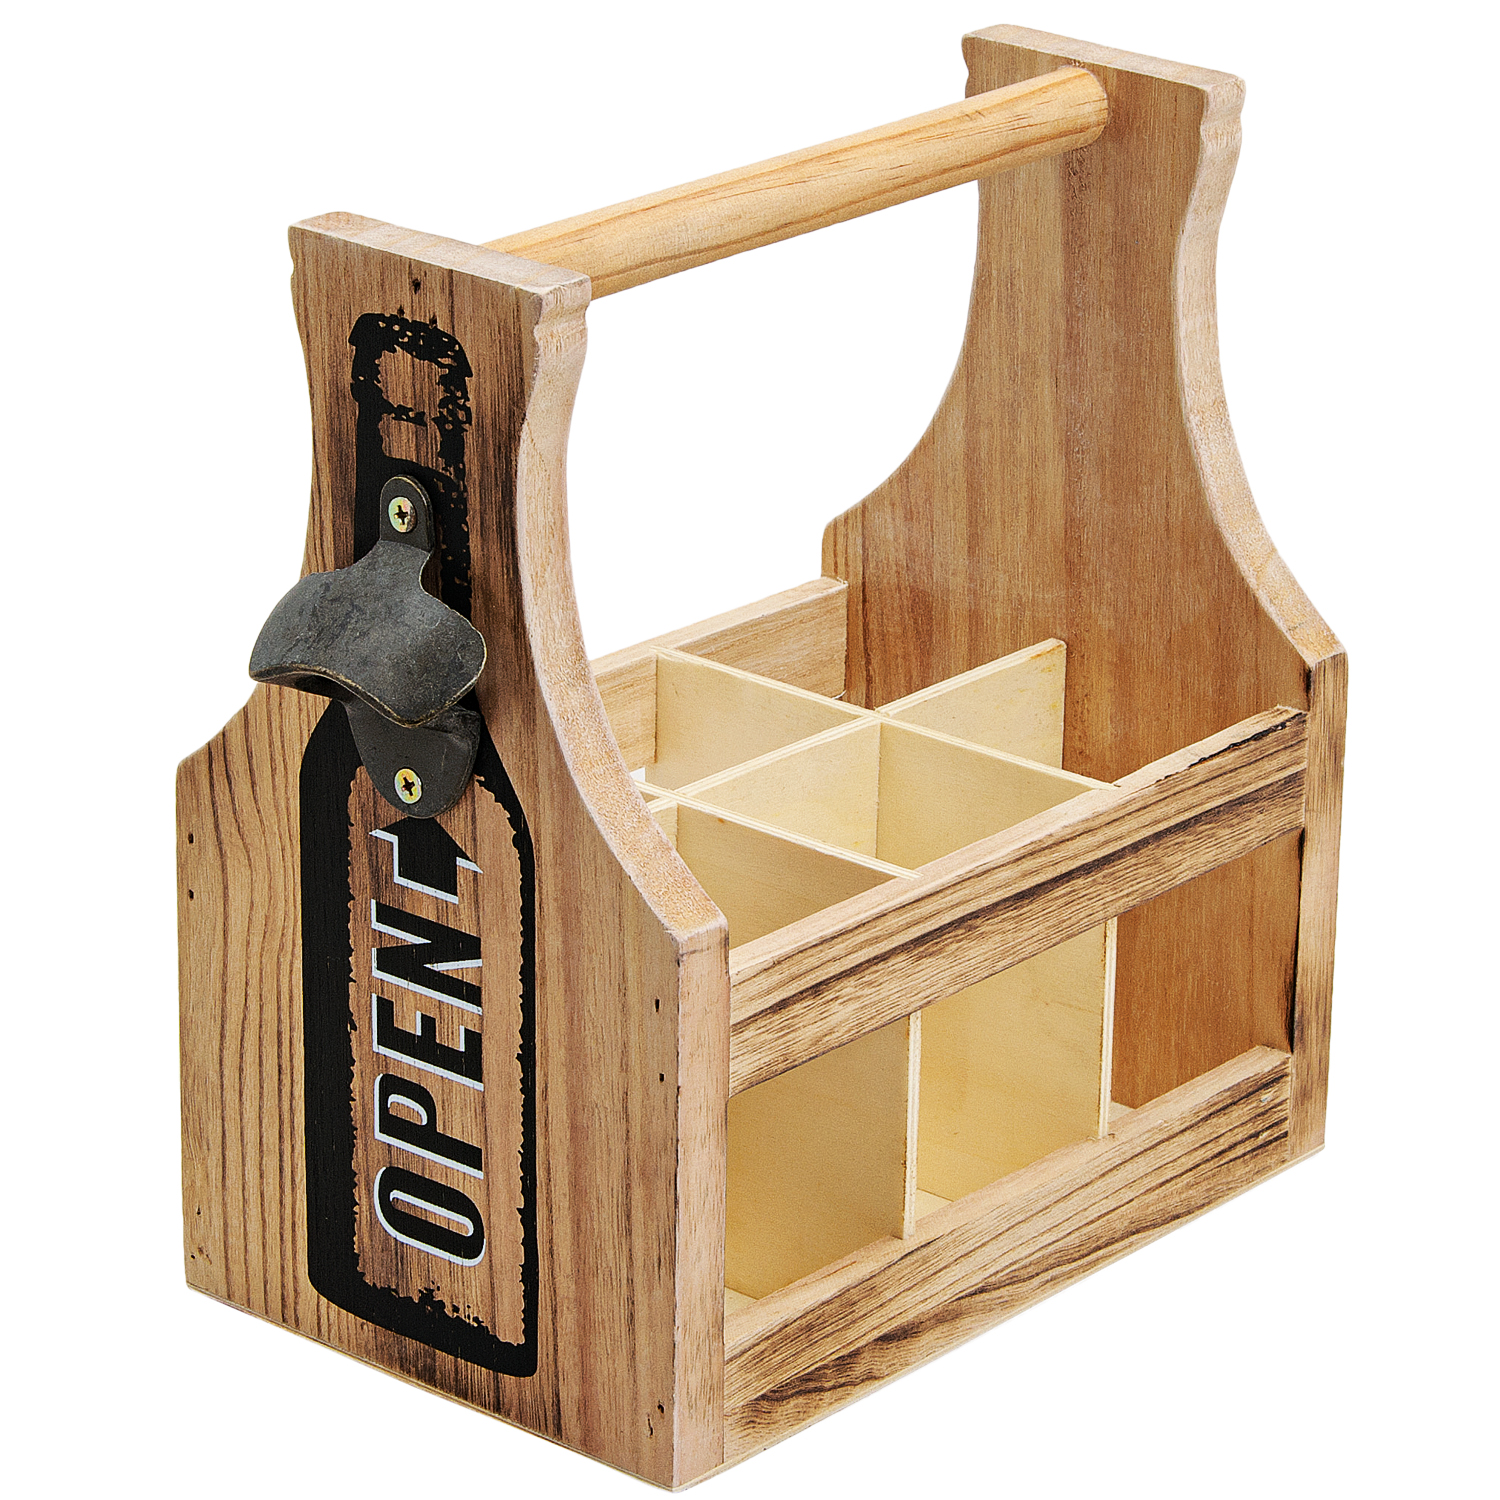 Flaschenbox für 6 Flaschen aus Holz und Metall 29x28x17cm praktischer Träger mit Flaschenöffner